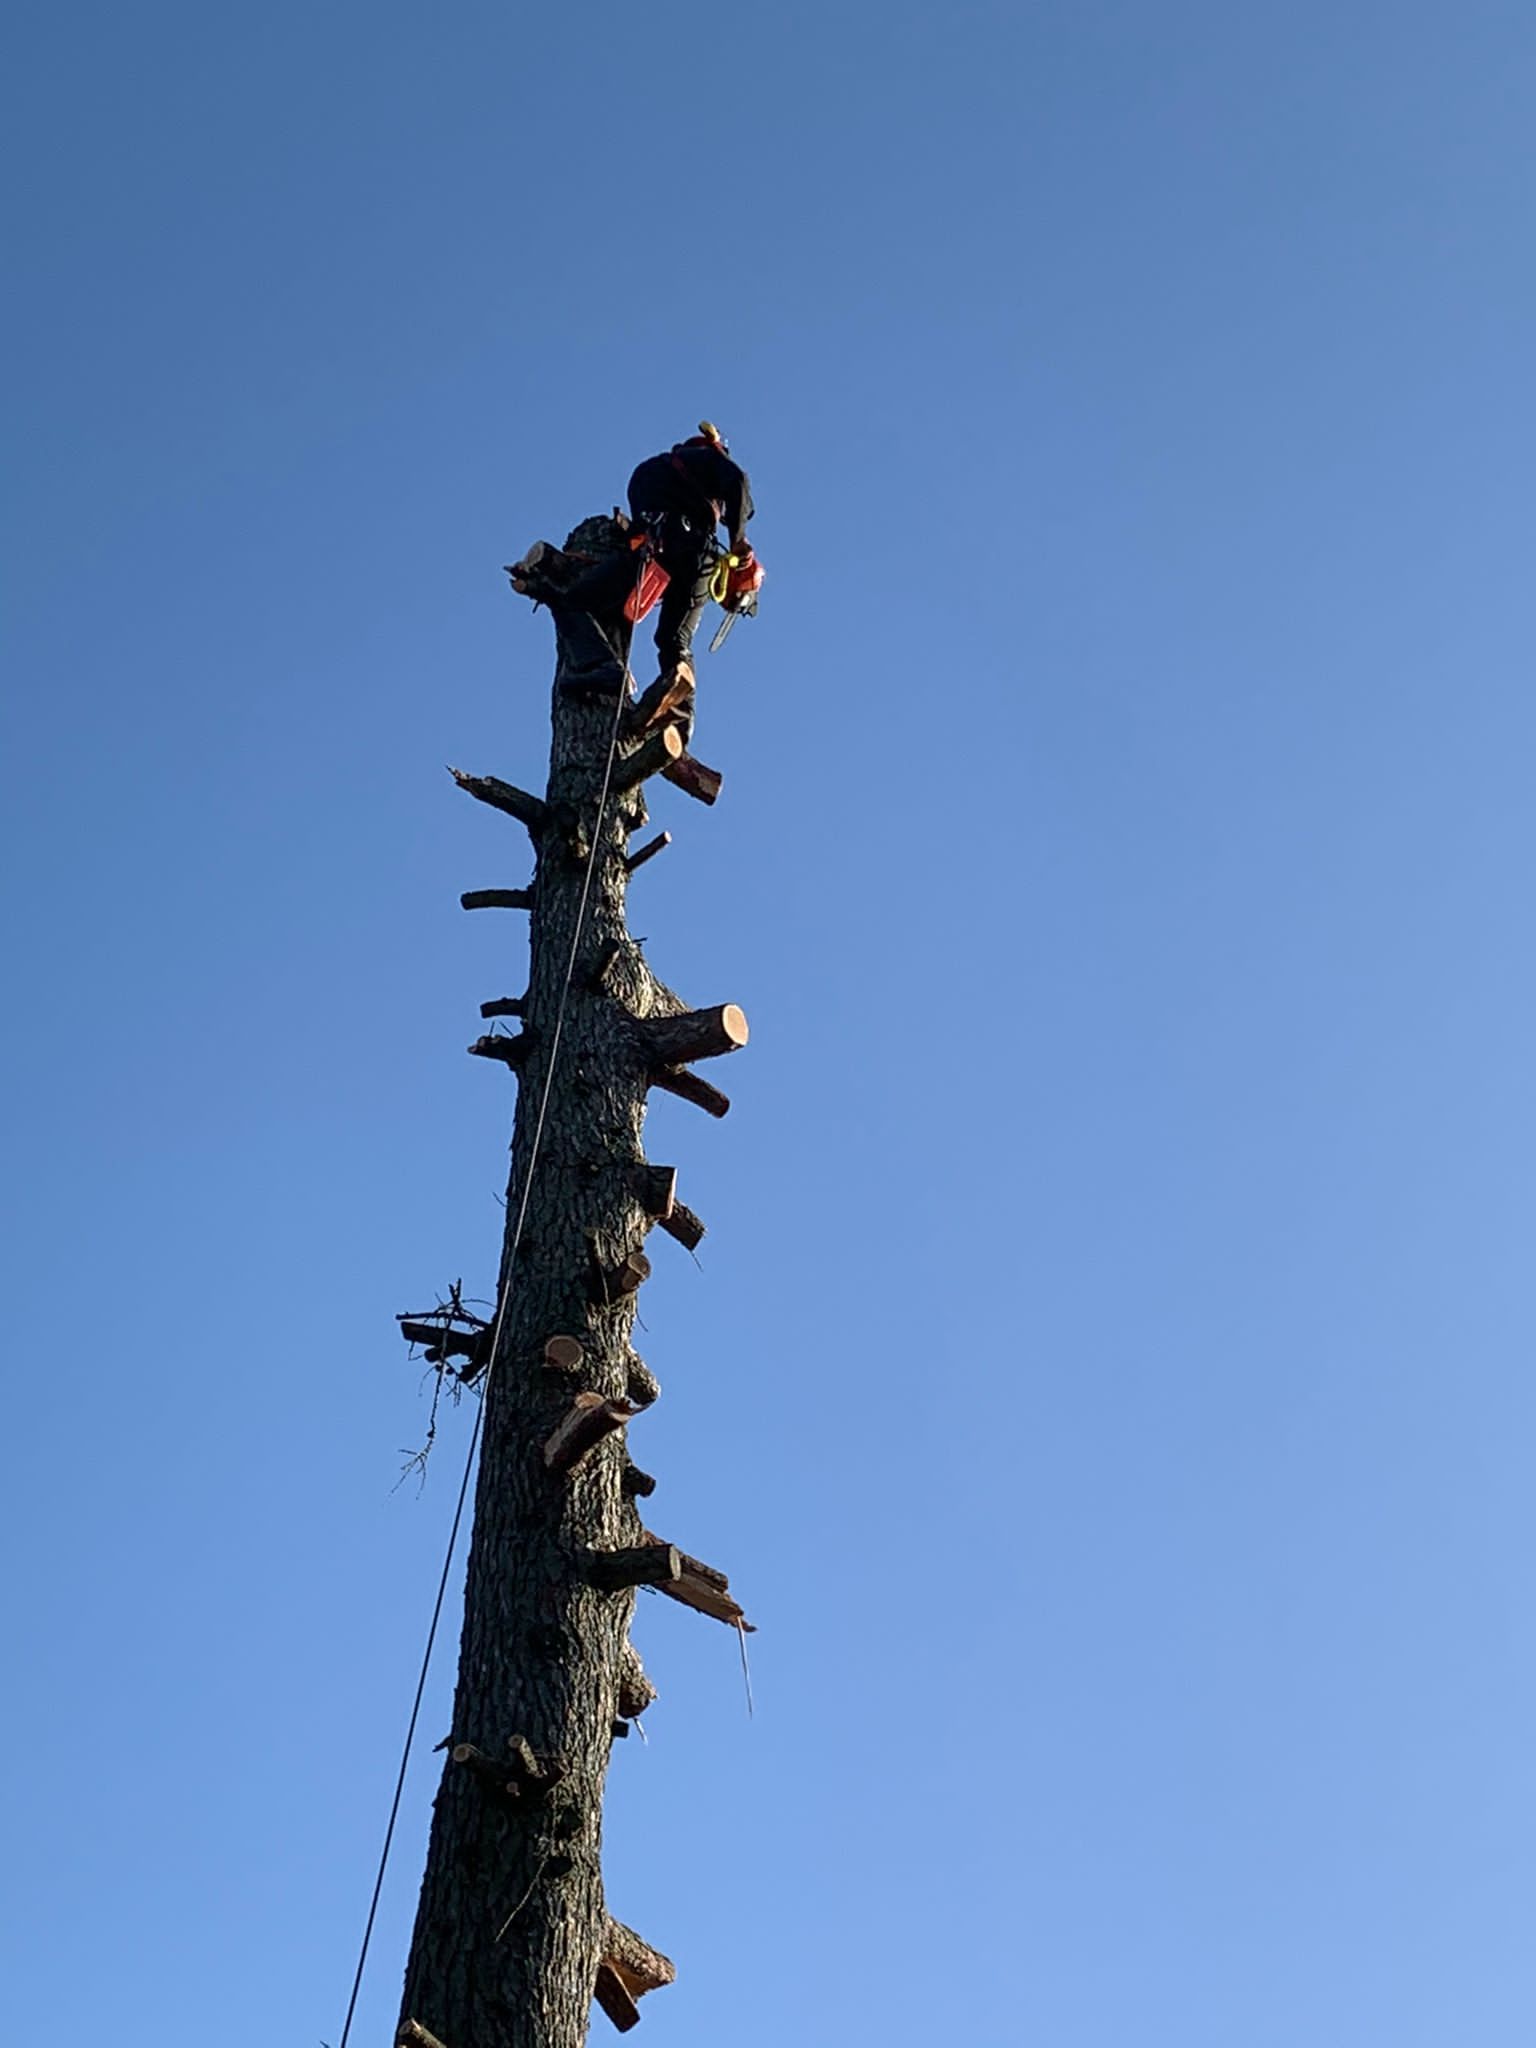 Baumkletterer beim Faellen eines Baumes in Seilklettertechnik